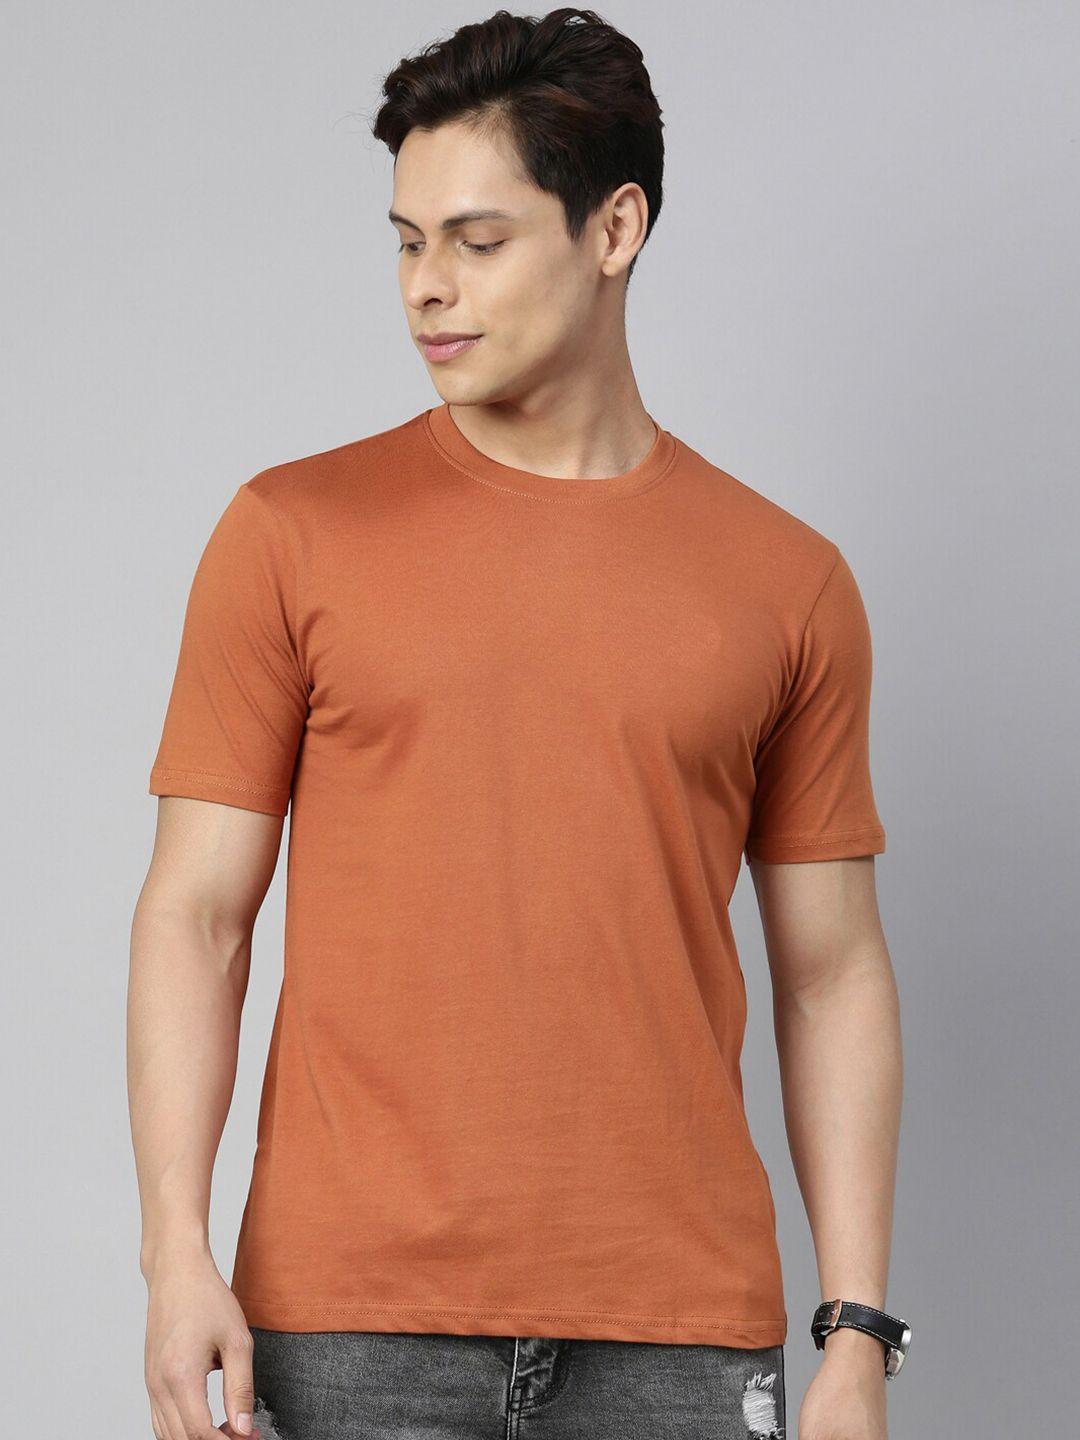 recast-men-camel-brown-pure-cotton-t-shirt